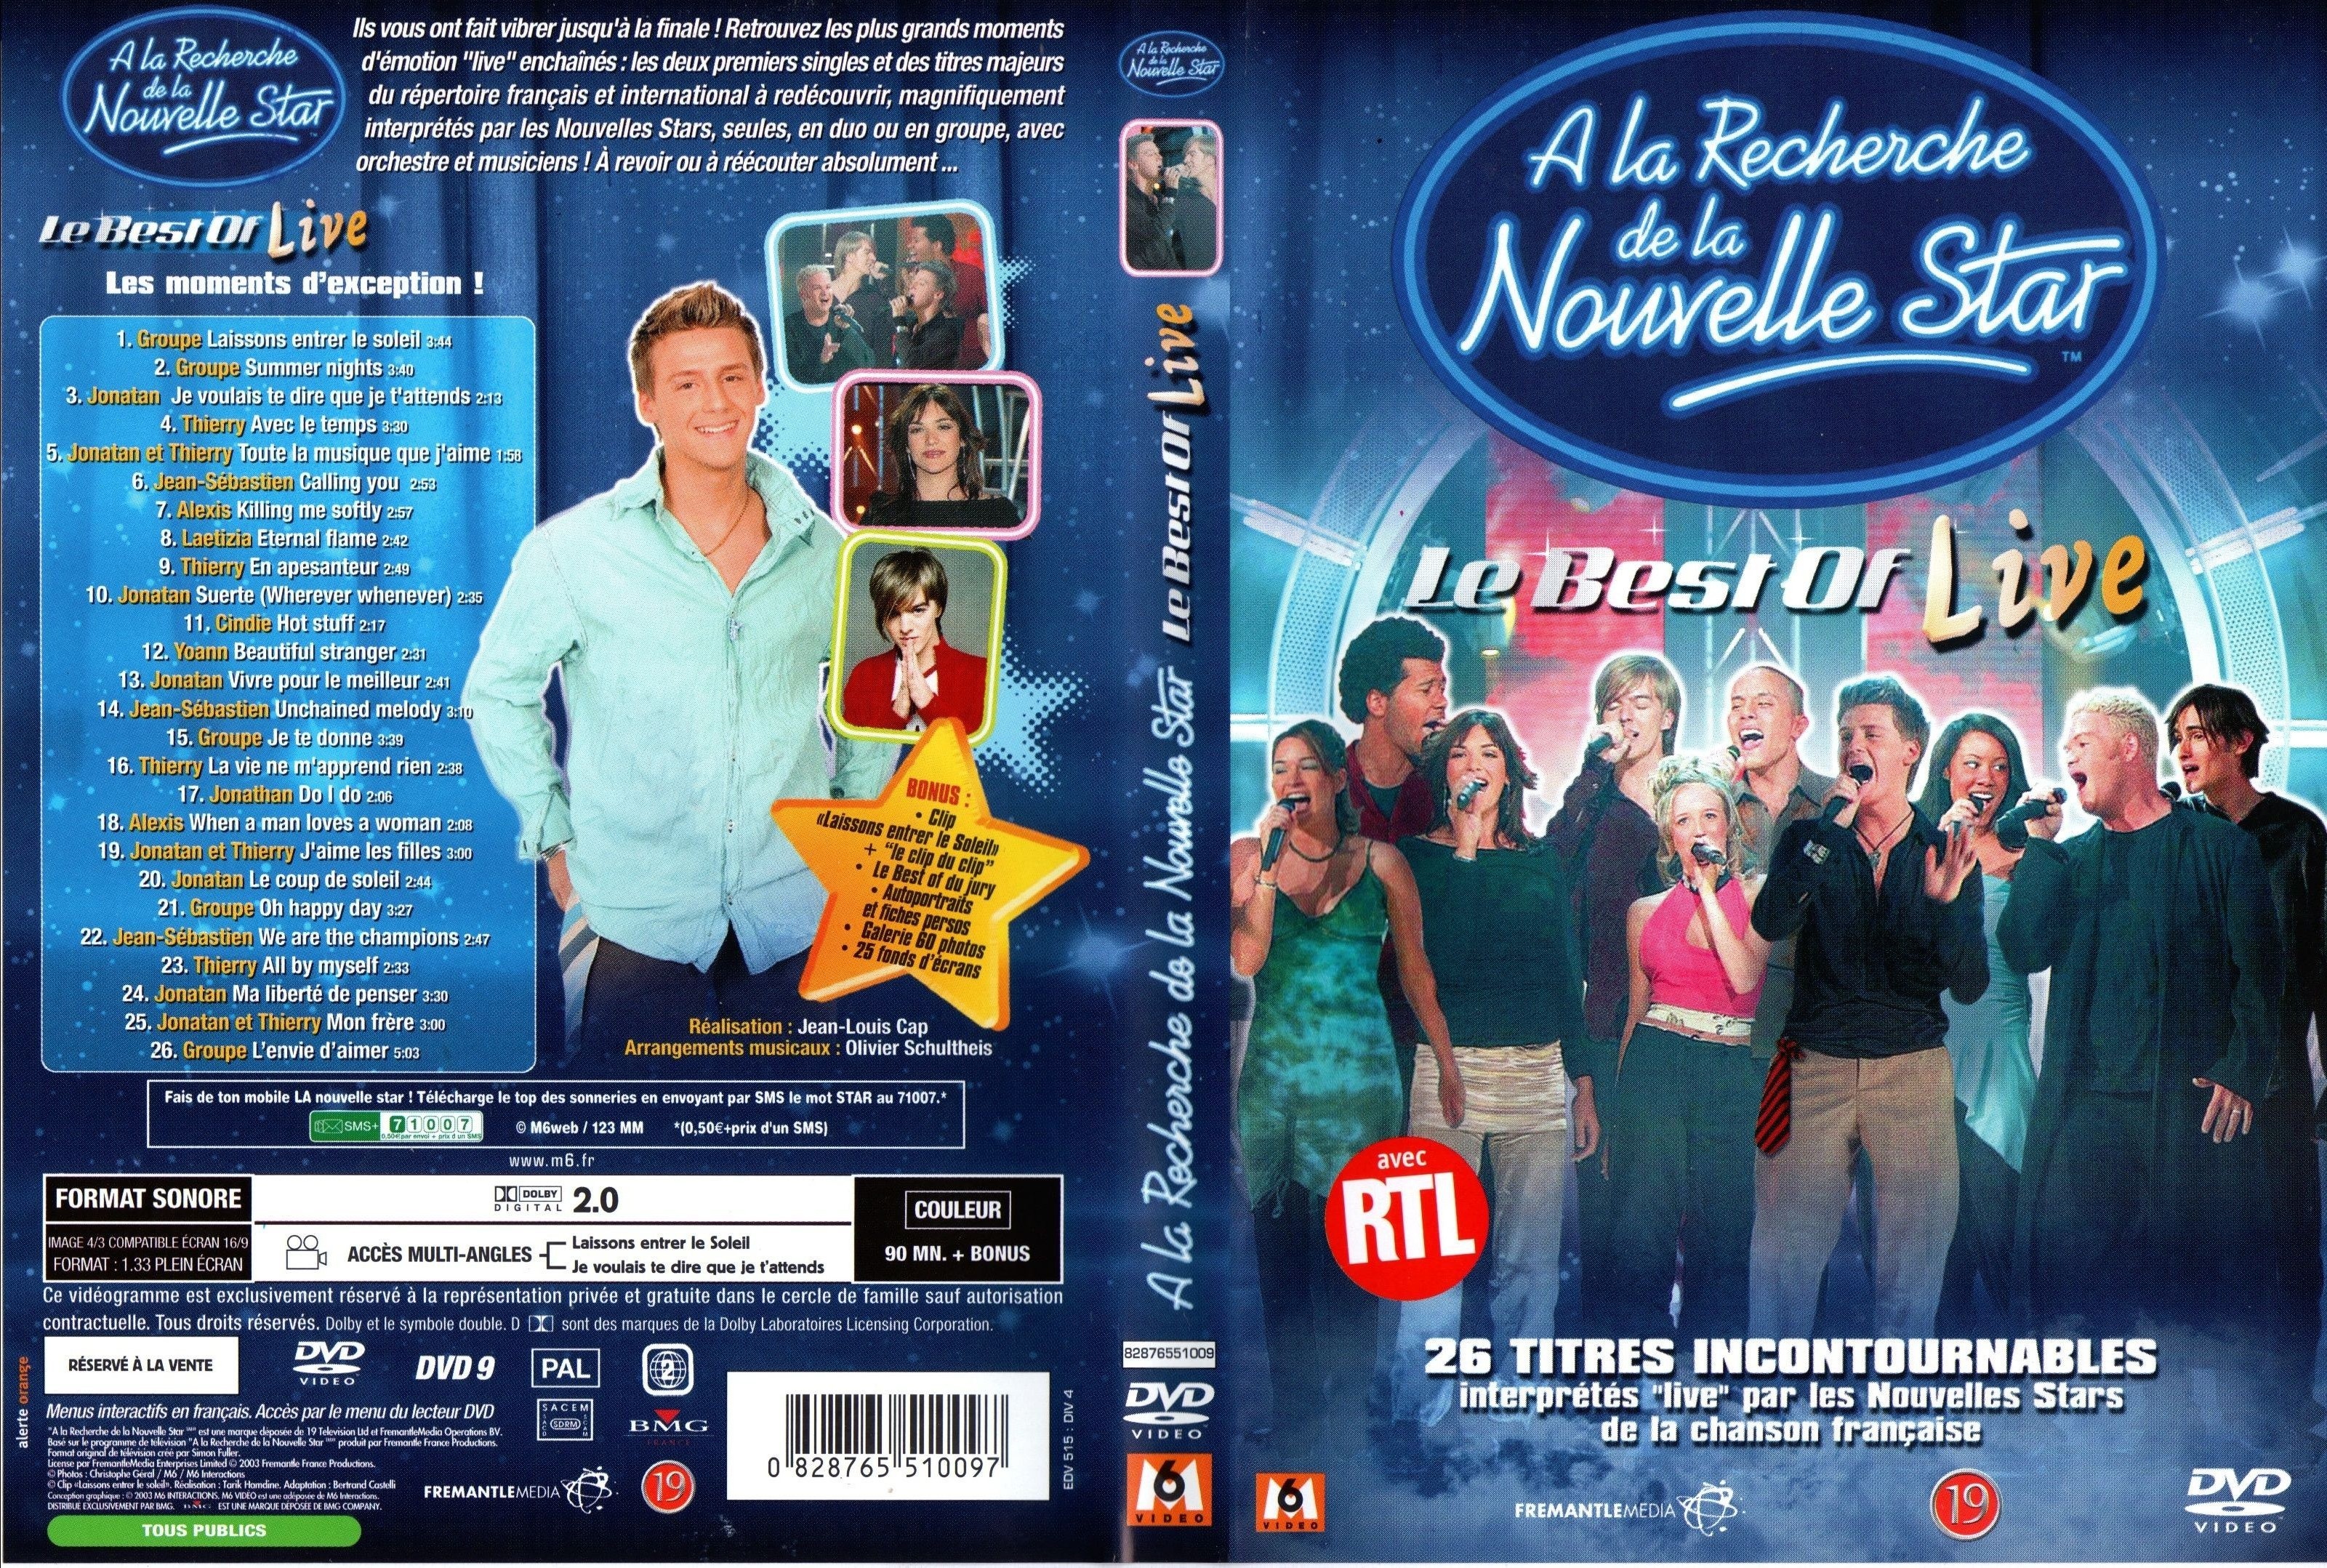 Jaquette DVD A la recherche de la nouvelle star le best of live